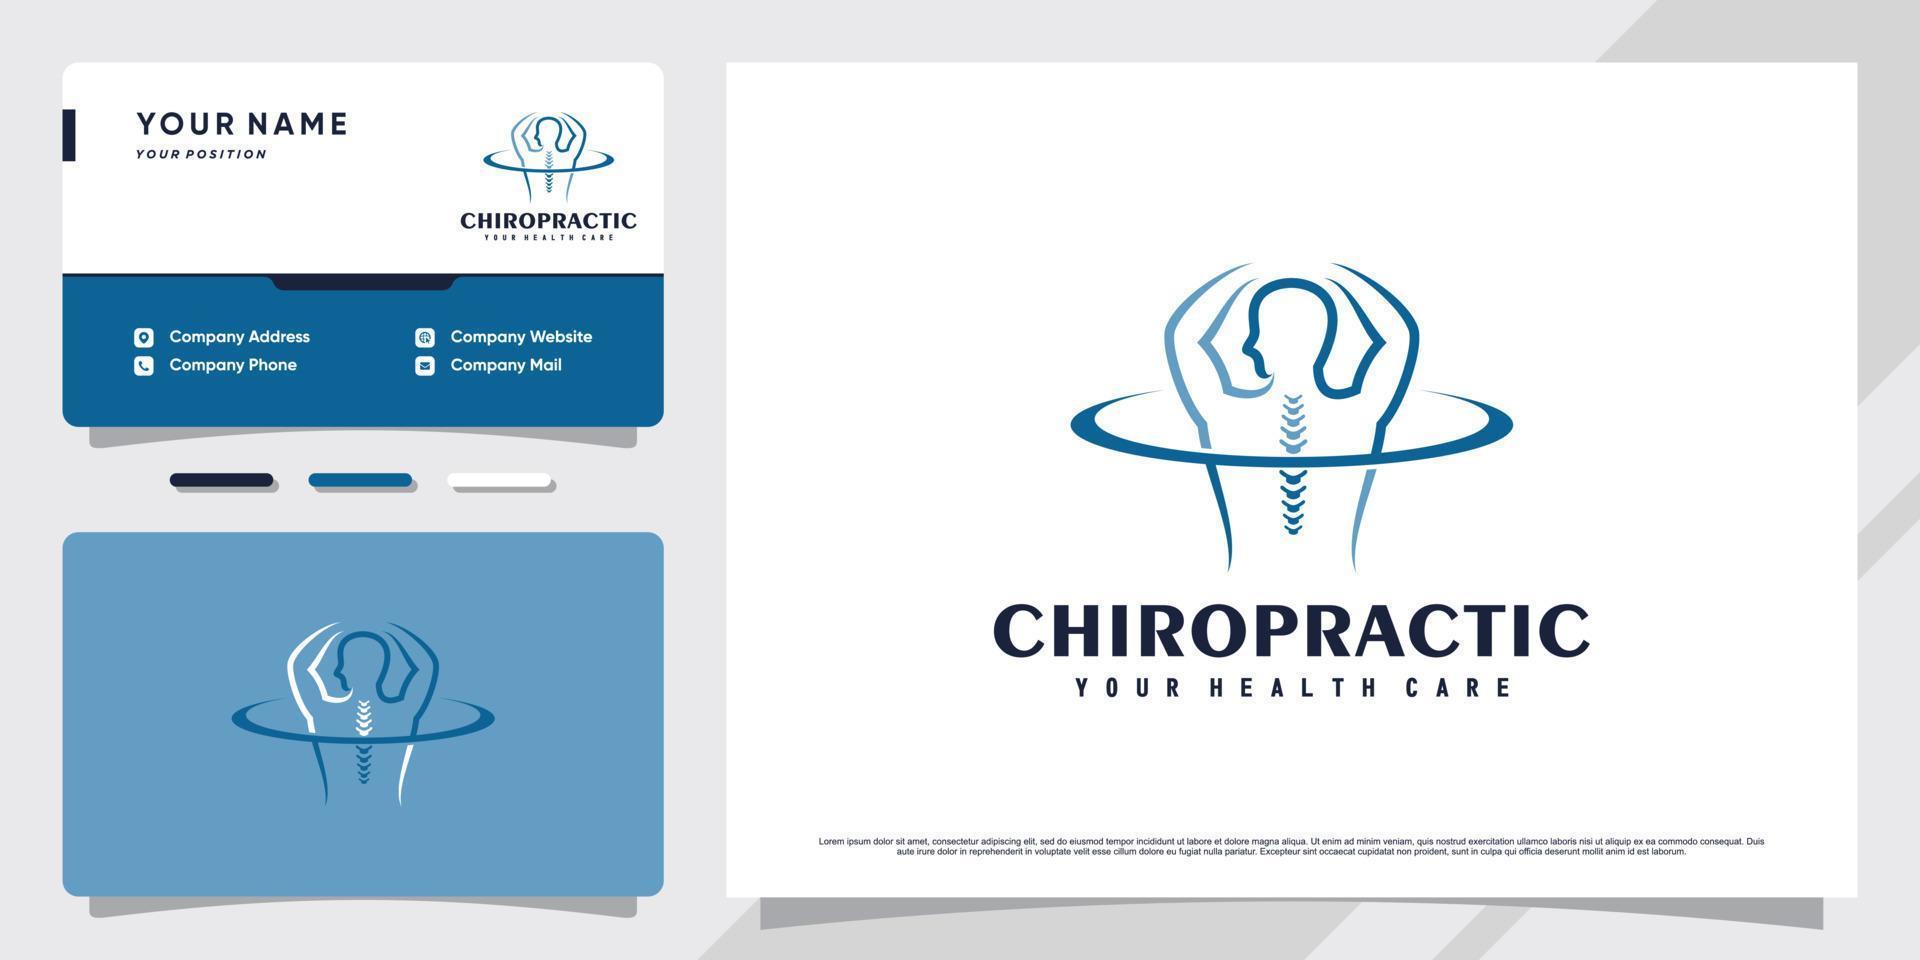 design del logo chiropratico per terapia di massaggio con modello di biglietto da visita vettore premium